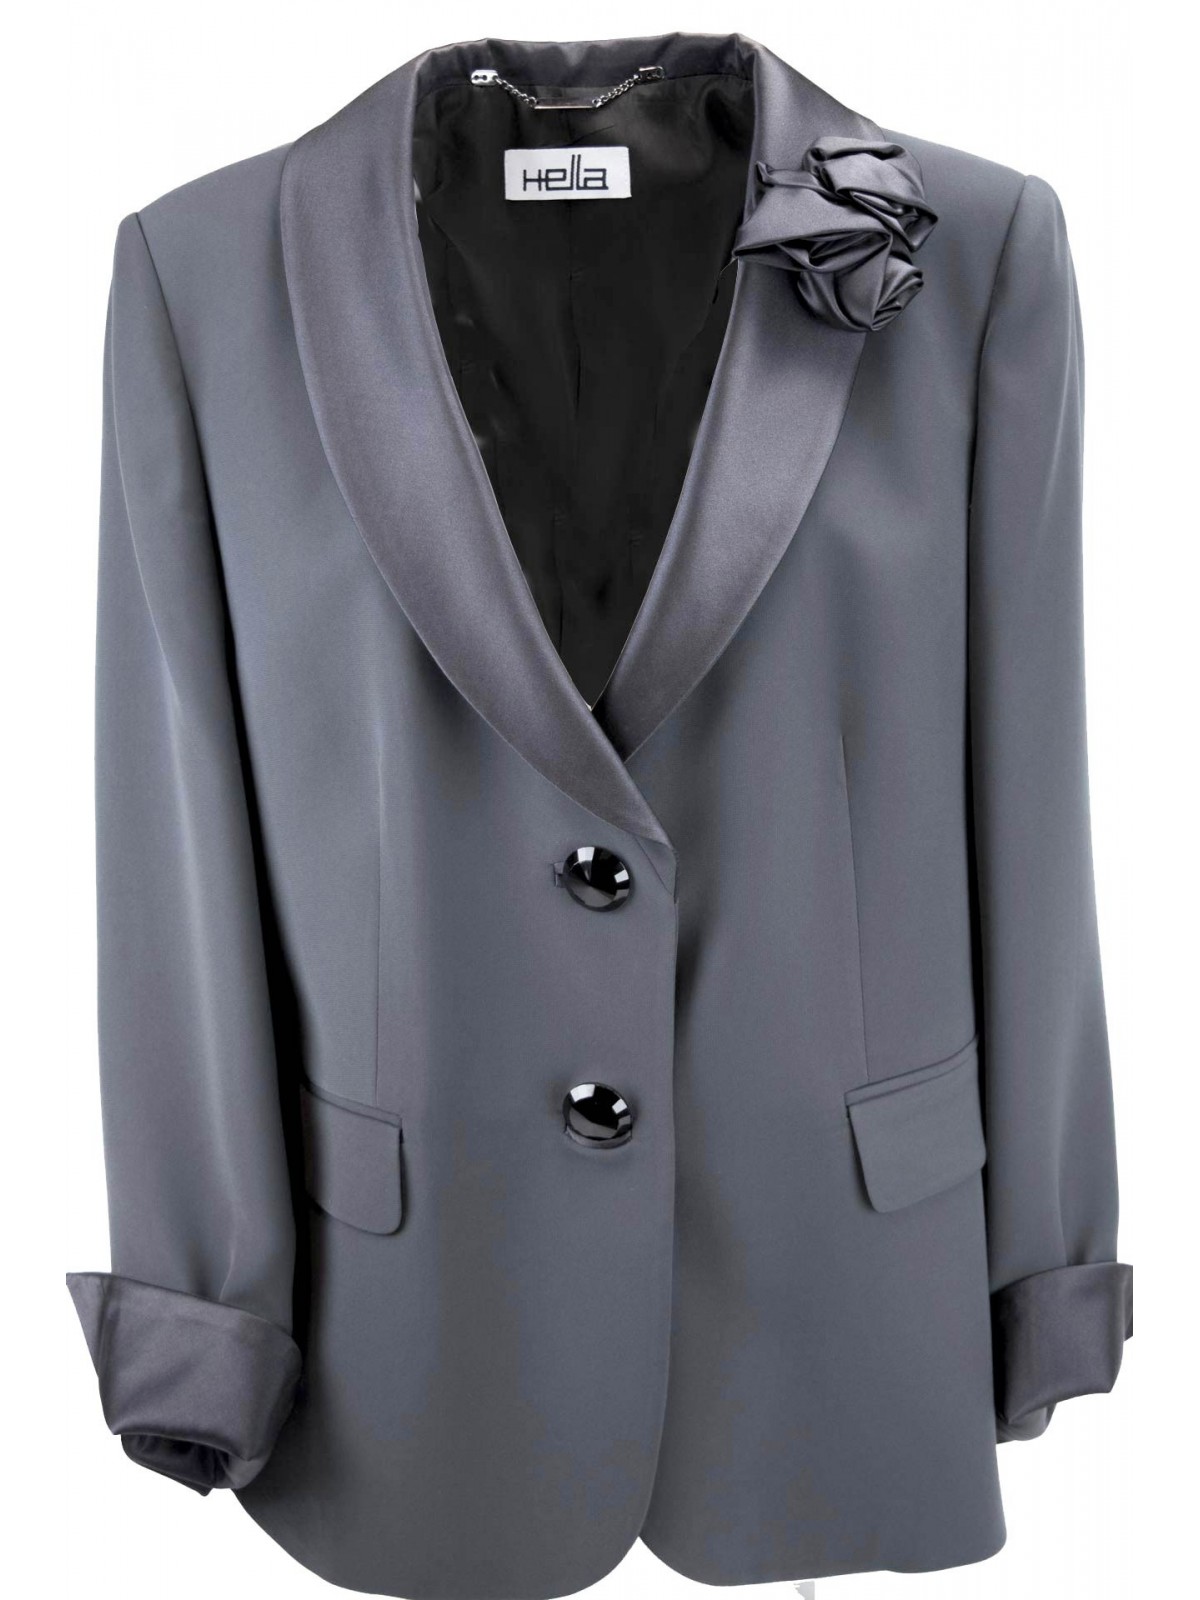 Smoking jacket Women ' s Grijs maat handige - Elegante Blazer